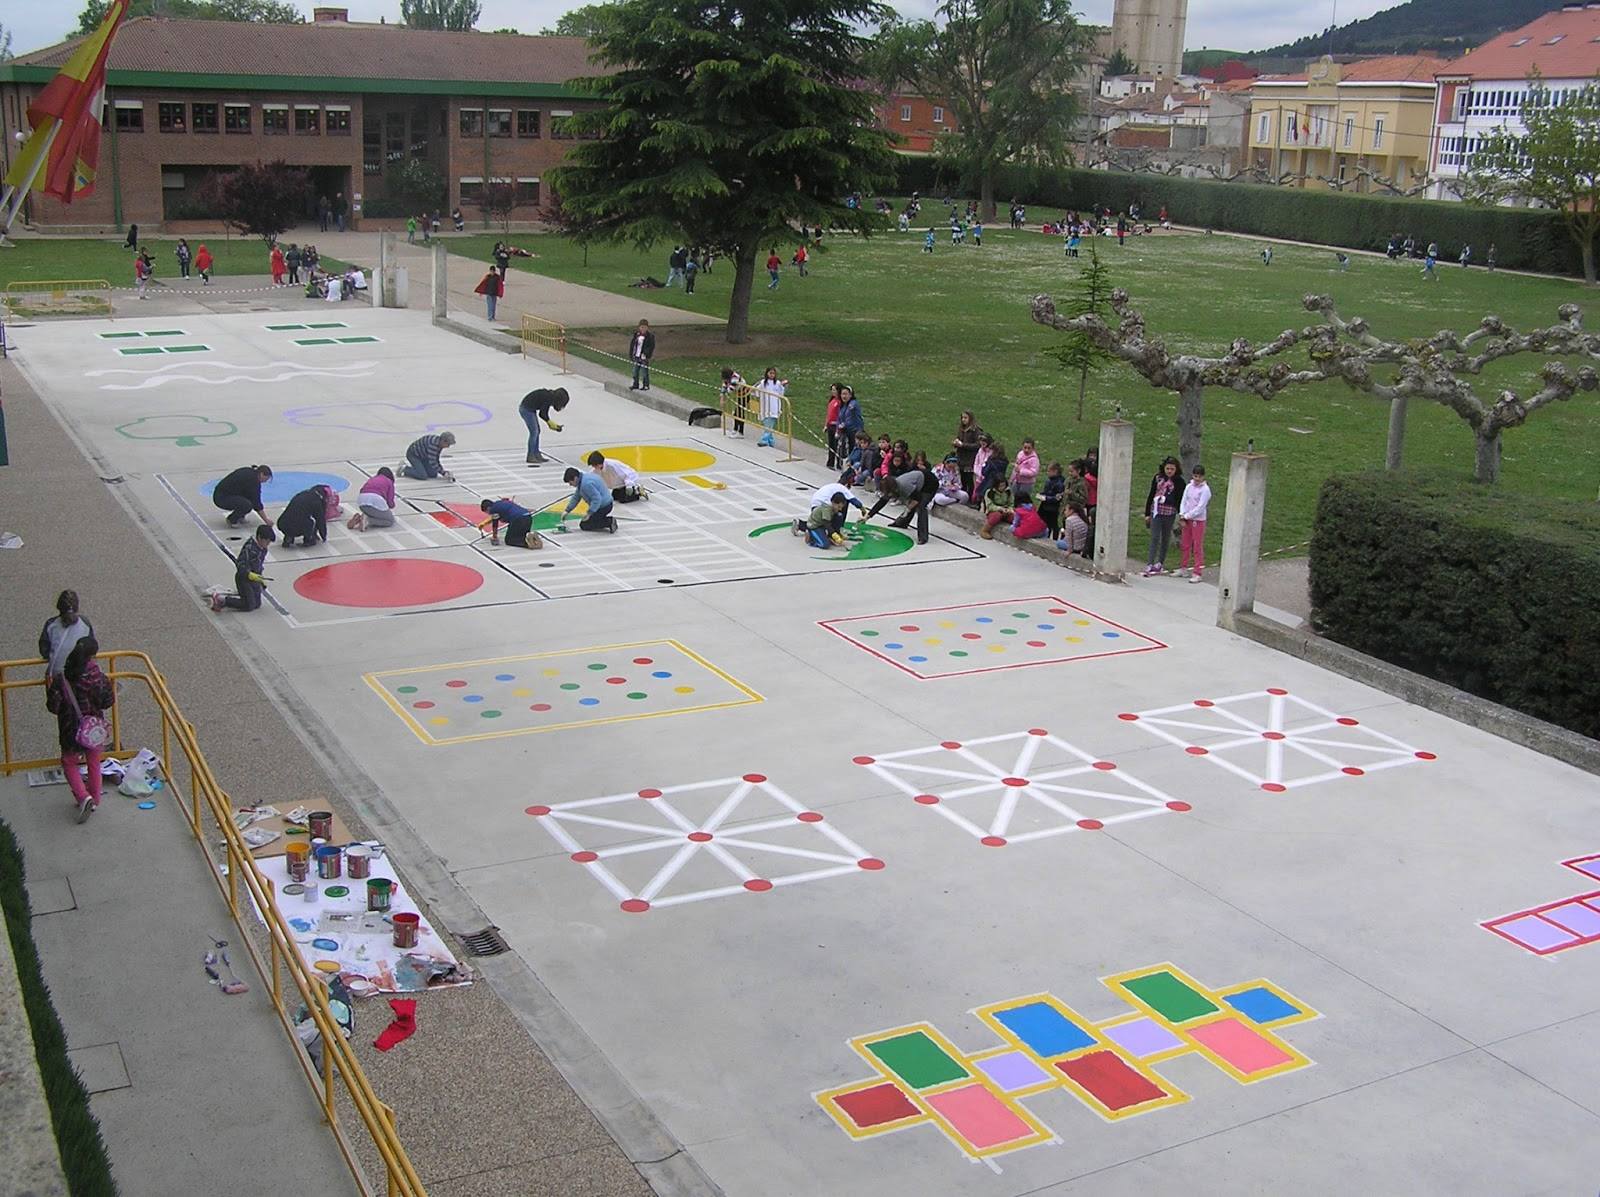 Juegos tradicionales patio colegio (14) - Imagenes Educativas